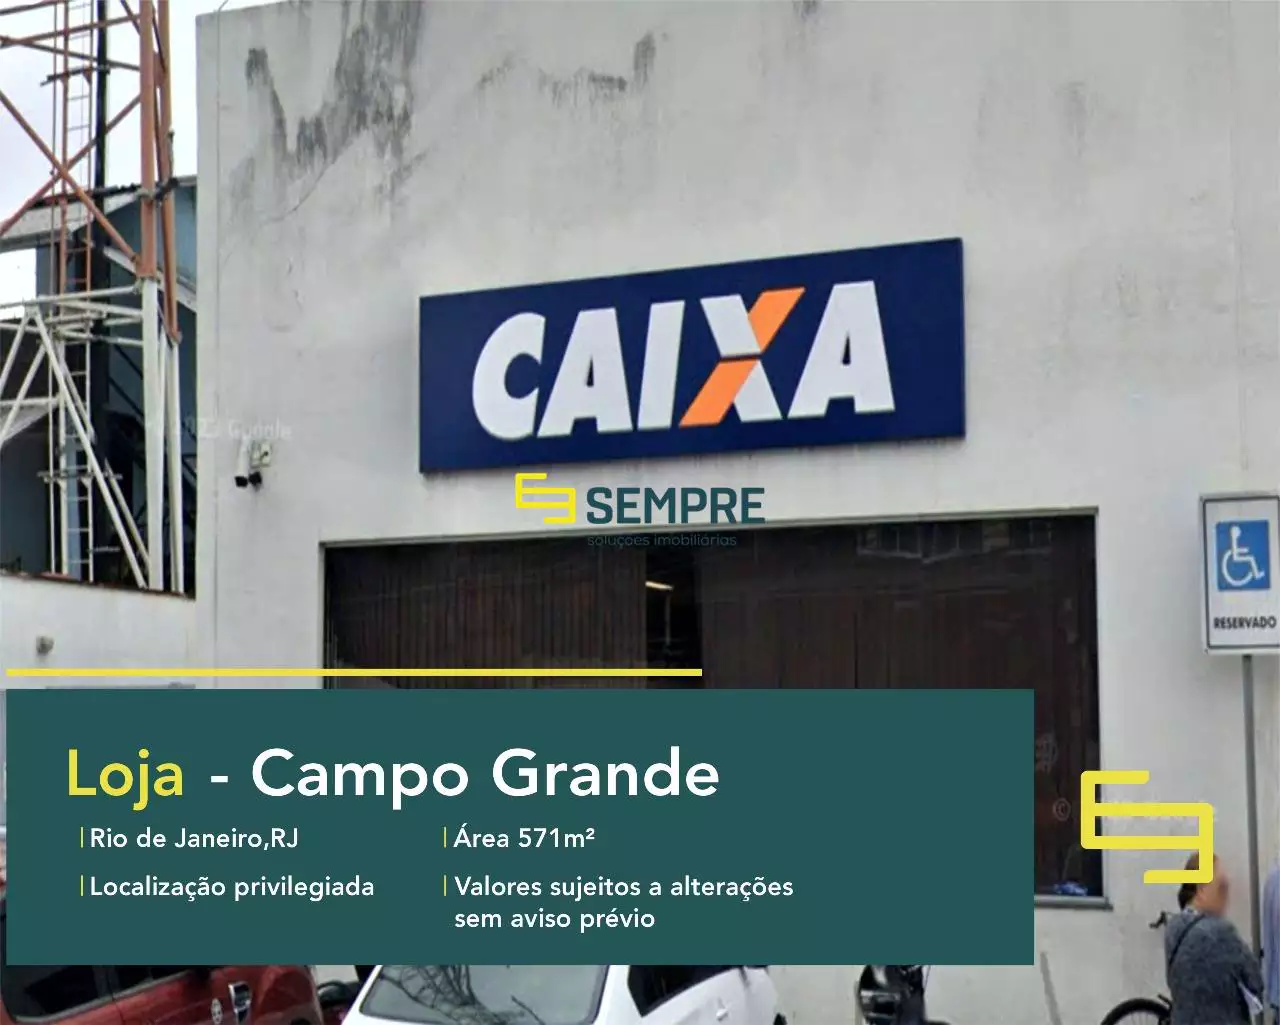 Loja para alugar em Campo Grande no Rio de Janeiro